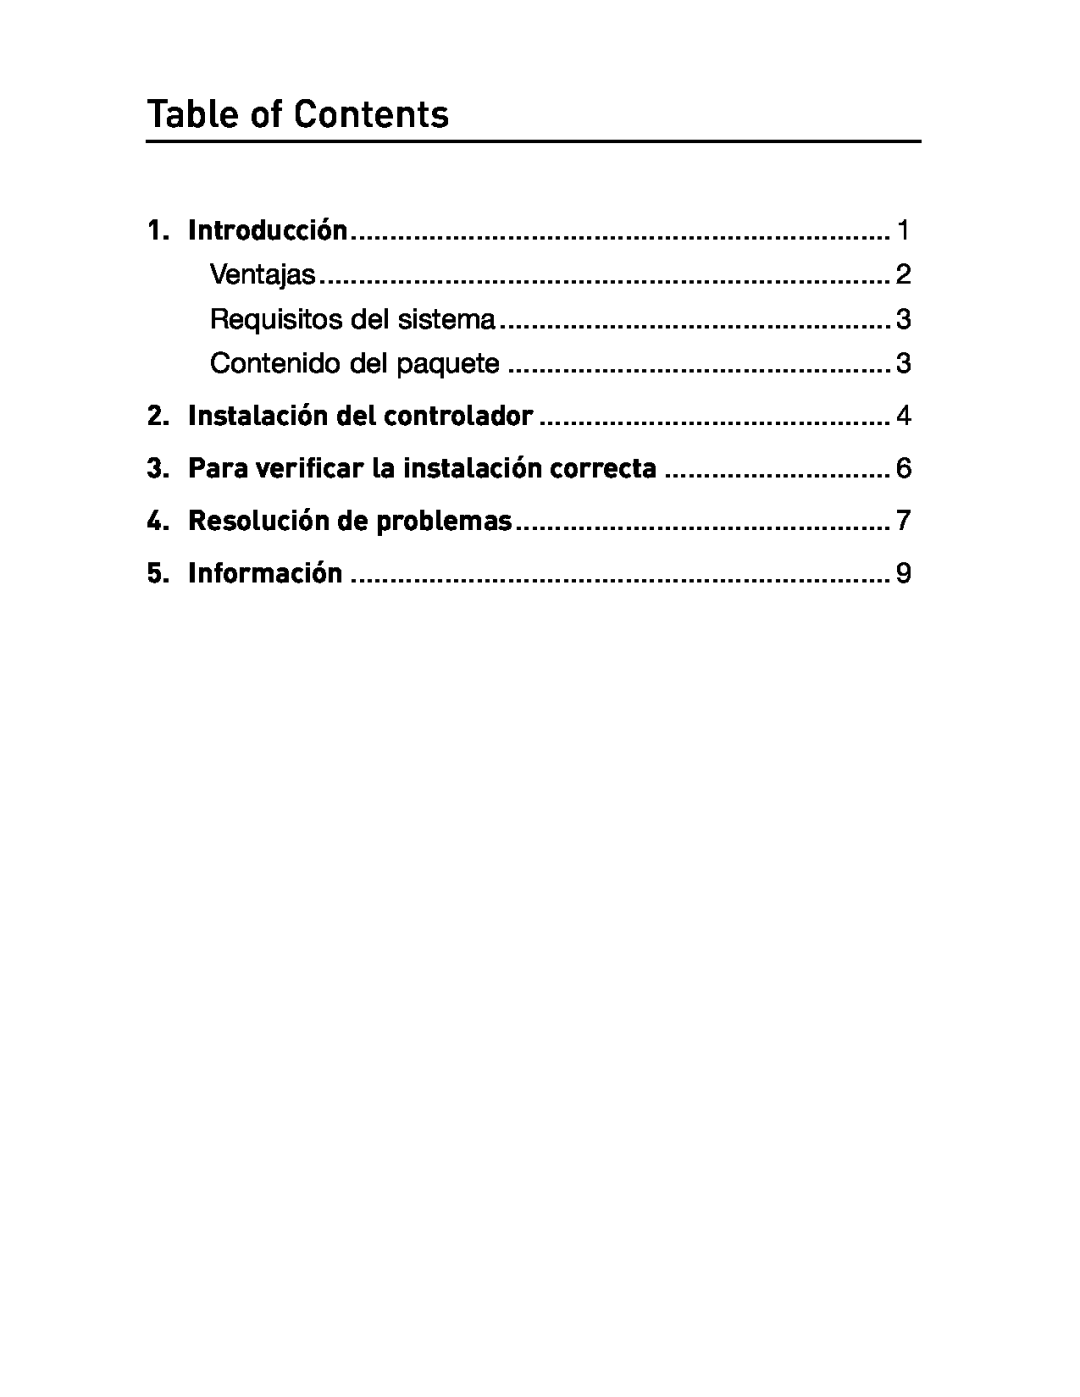 Belkin F5U514 manual Table of Contents, Ventajas, Requisitos del sistema, Contenido del paquete, Introducción, Información 